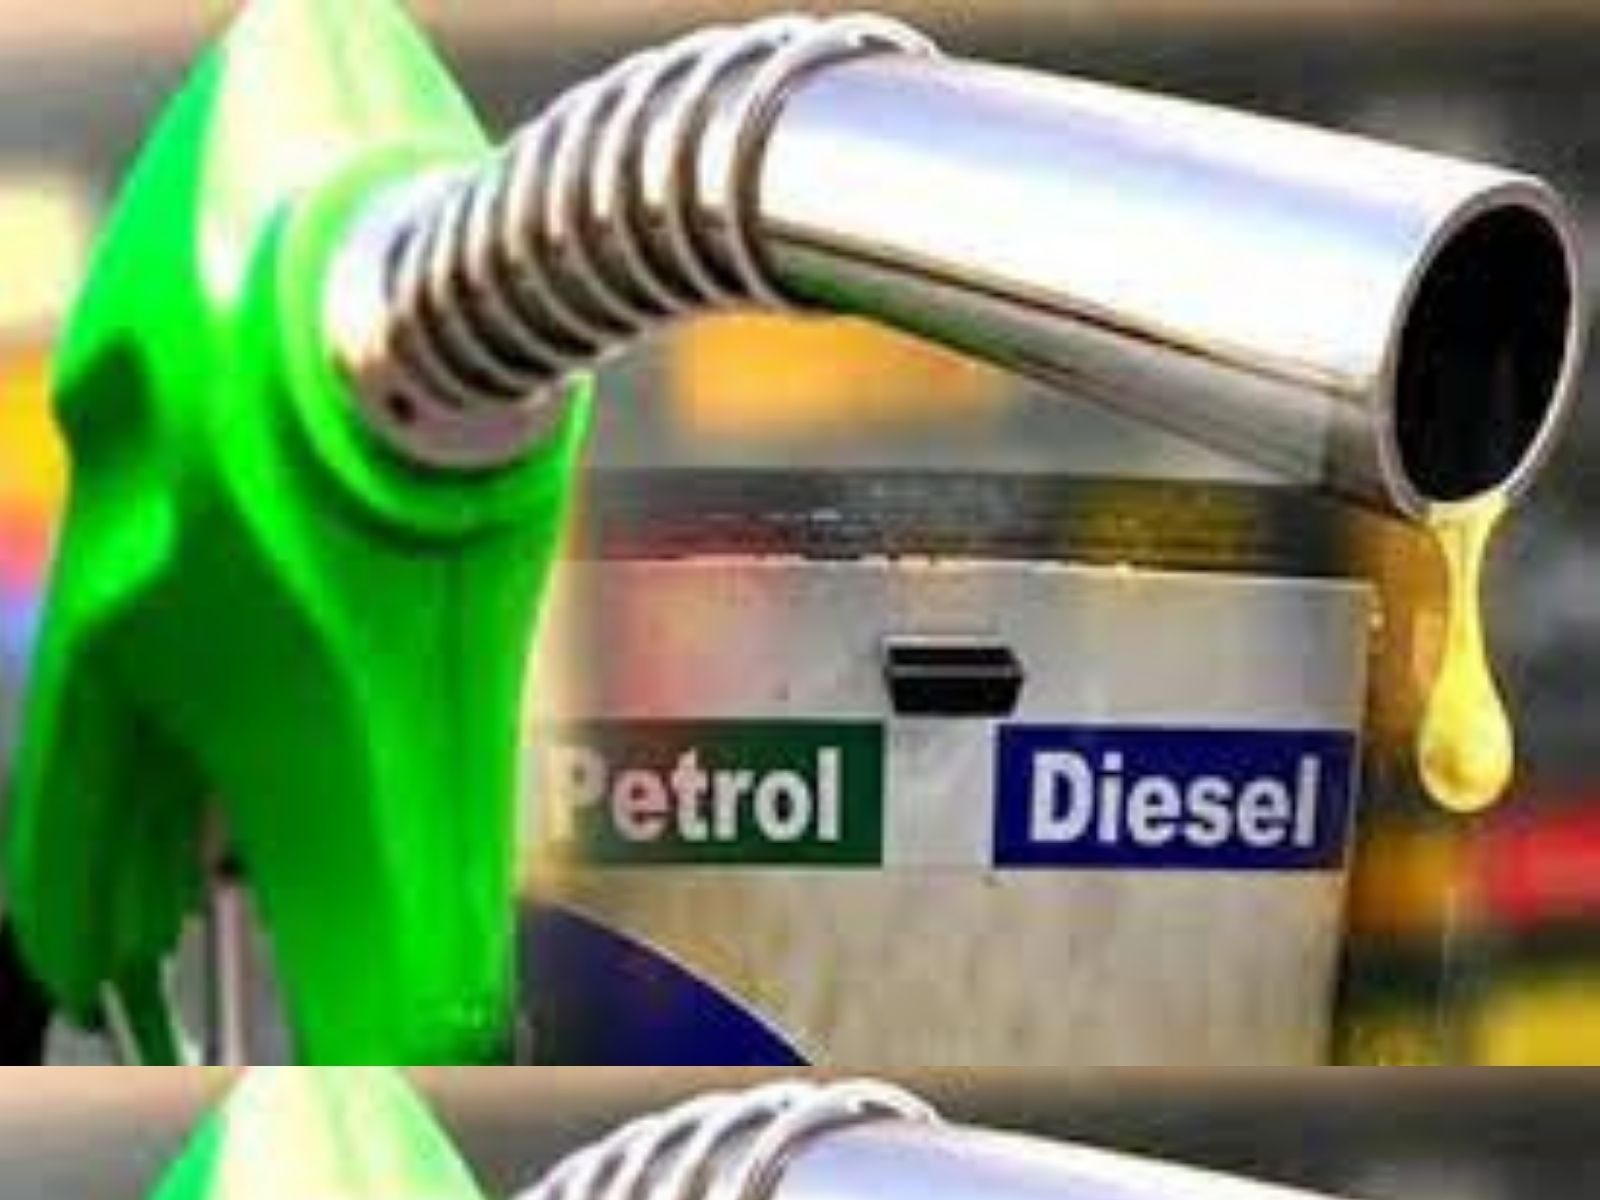  Petrol Diesel Prices: ਕੱਚੇ ਤੇਲ ਦੀਆਂ ਕੀਮਤਾਂ ਵਿੱਚ ਆਈ ਗਿਰਾਵਟ, ਜਾਣੋ ਪੈਟਰੋਲ ਡੀਜ਼ਲ ਦੇ ਤਾਜ਼ਾ ਰੇਟ
